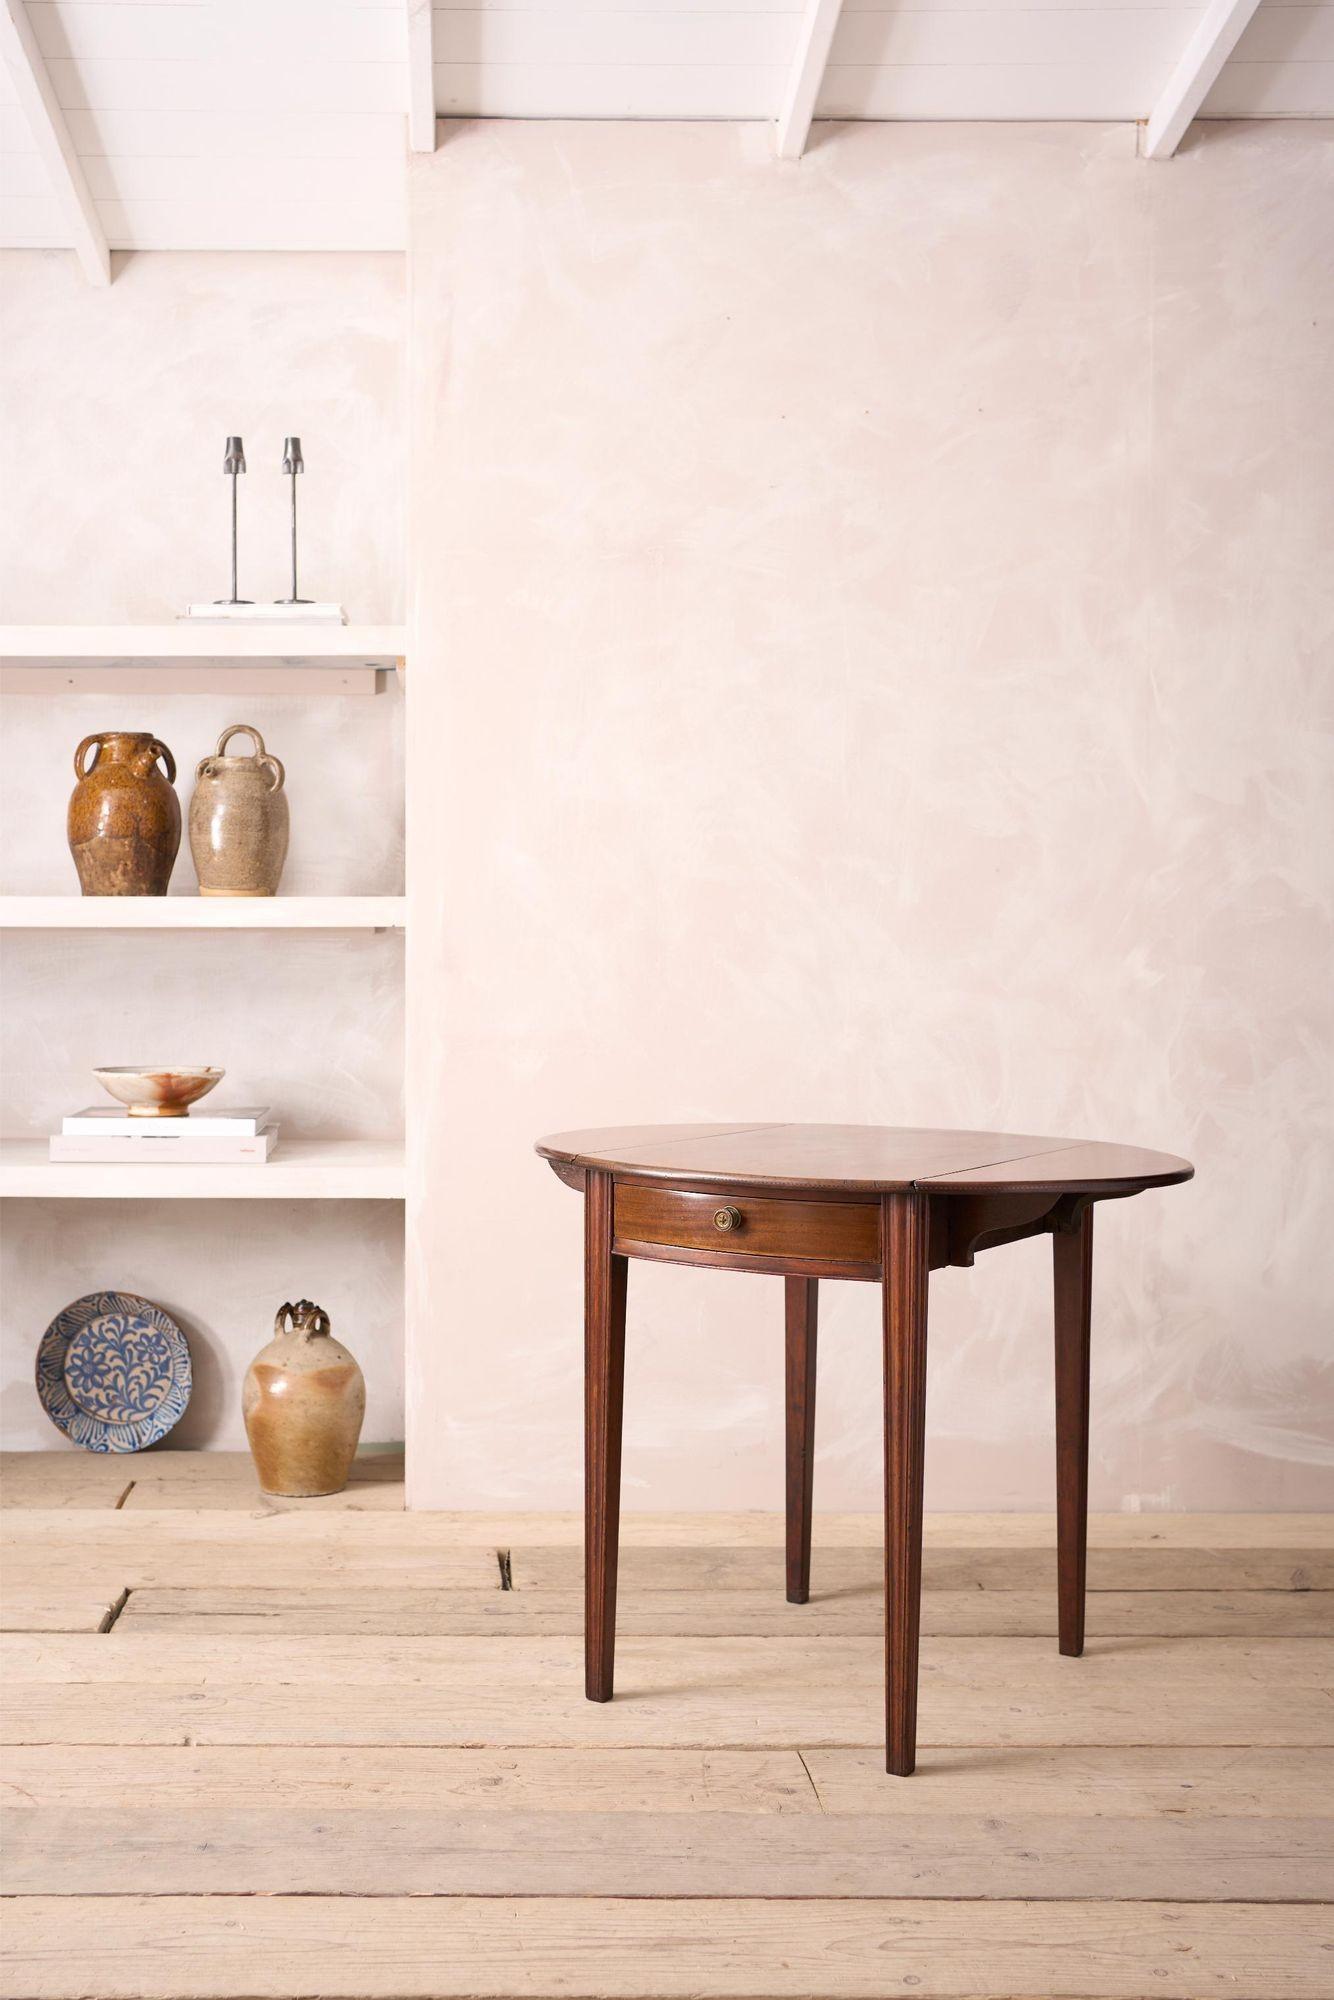 Dies ist eine hervorragende Qualität sehr elegant Georgian Pembroke Tisch. Massives Mahagoni und wunderschönes Design. Die Seiten lassen sich leicht zusammenfalten und sind ebenfalls leicht aufzustellen. Sauberer Gesamtzustand mit einer attraktiven